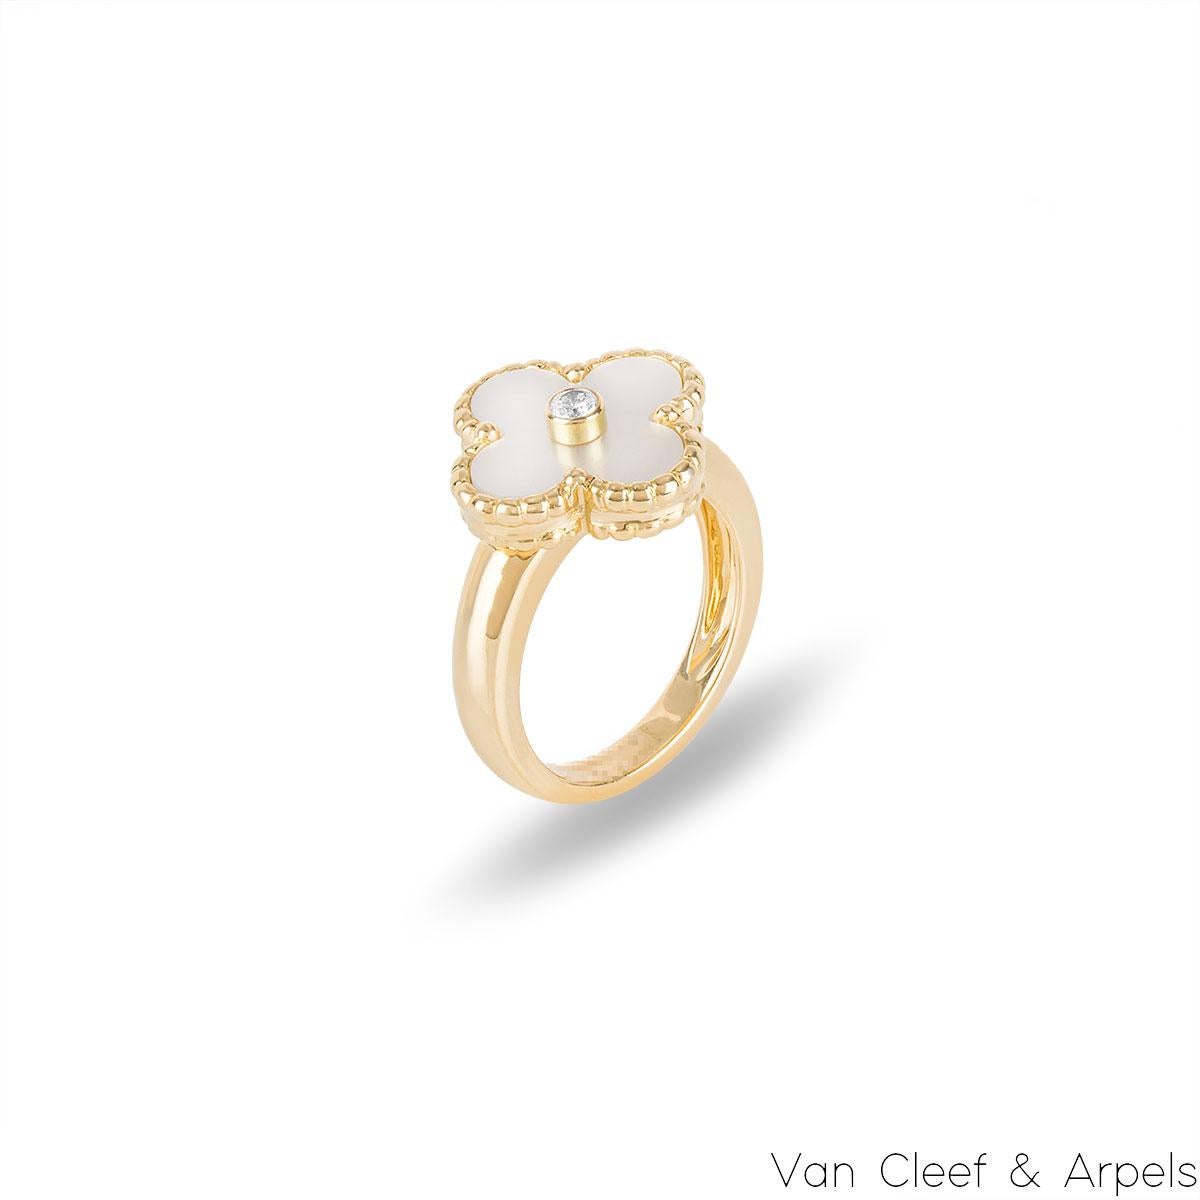 Ein wunderschöner Ring aus 18k Gelbgold mit Perlmutt von Van Cleef & Arpels aus der Vintage Alhambra Kollektion. Der Ring zeigt das ikonische vierblättrige Kleeblattmotiv mit einer Perlmuttintarsie, ergänzt durch eine Perlenkante und einen runden